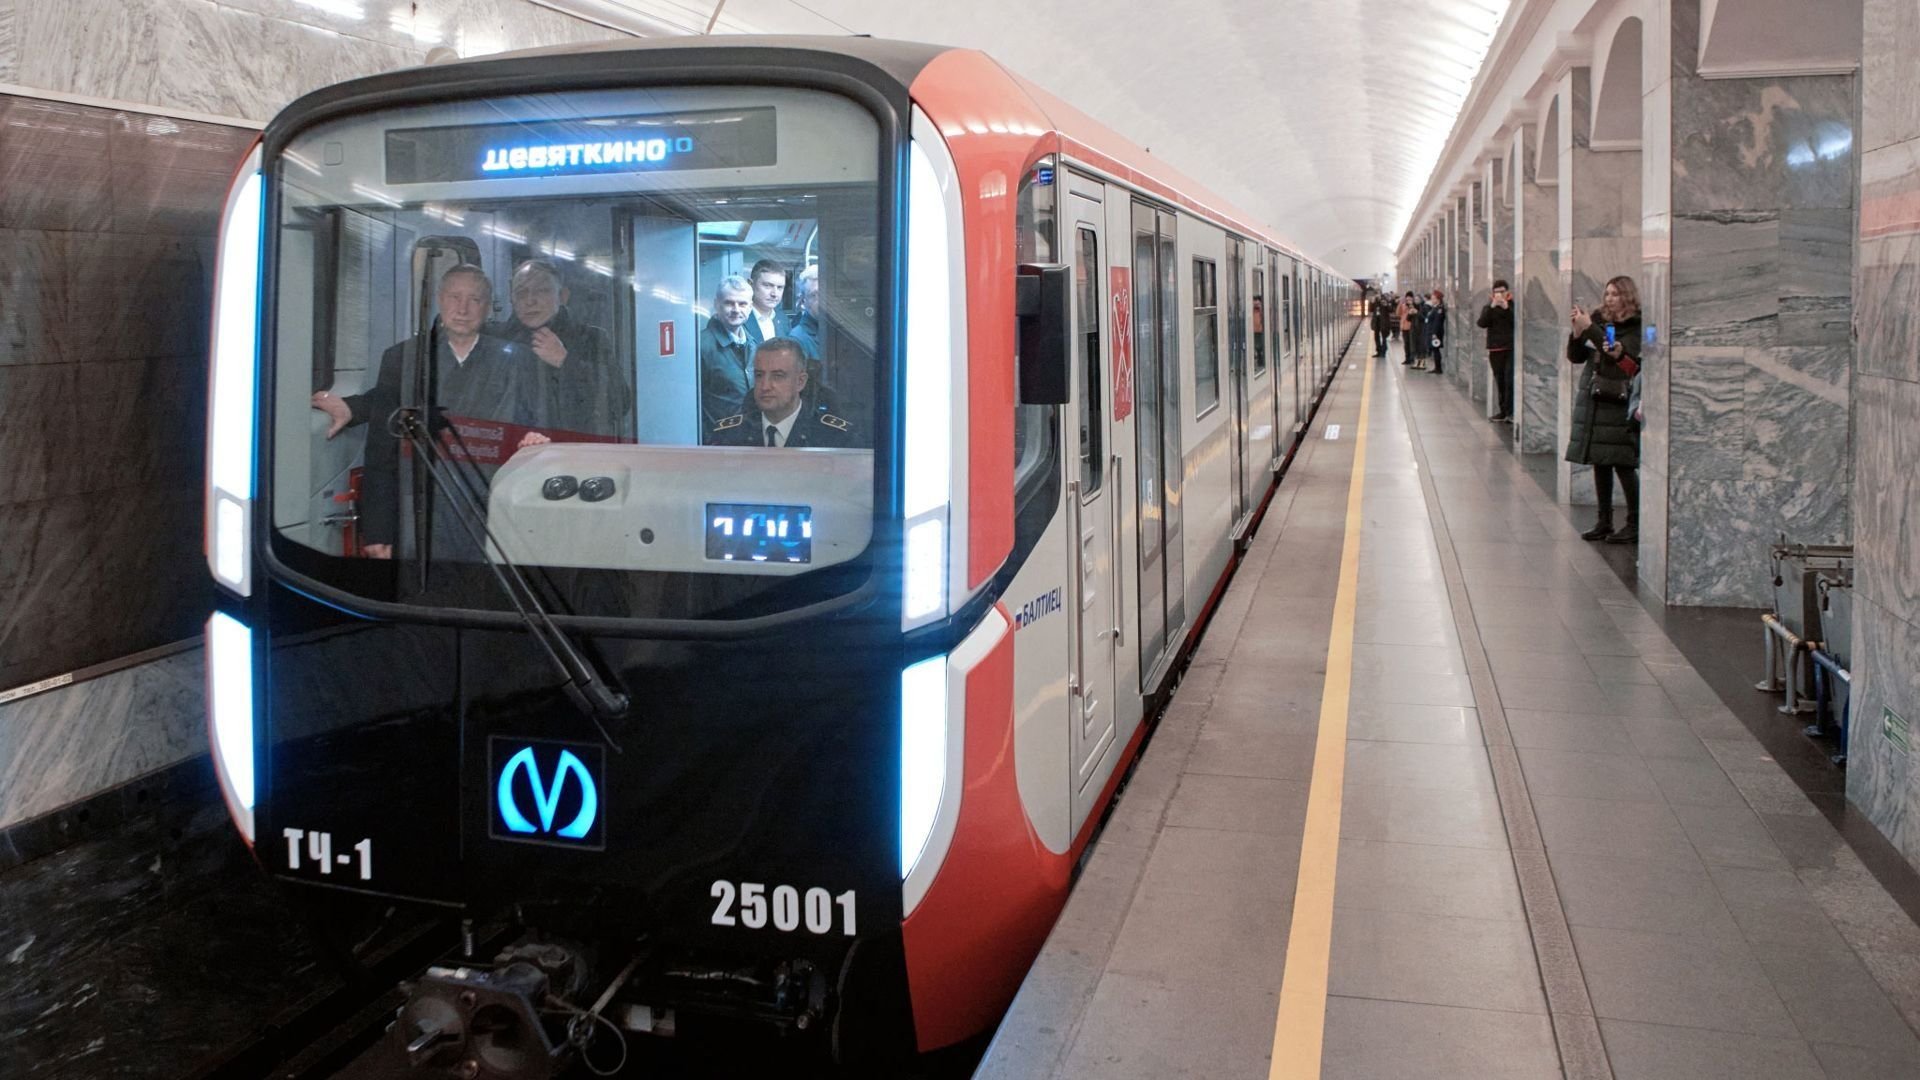 Балтиец поезд метро спб фото